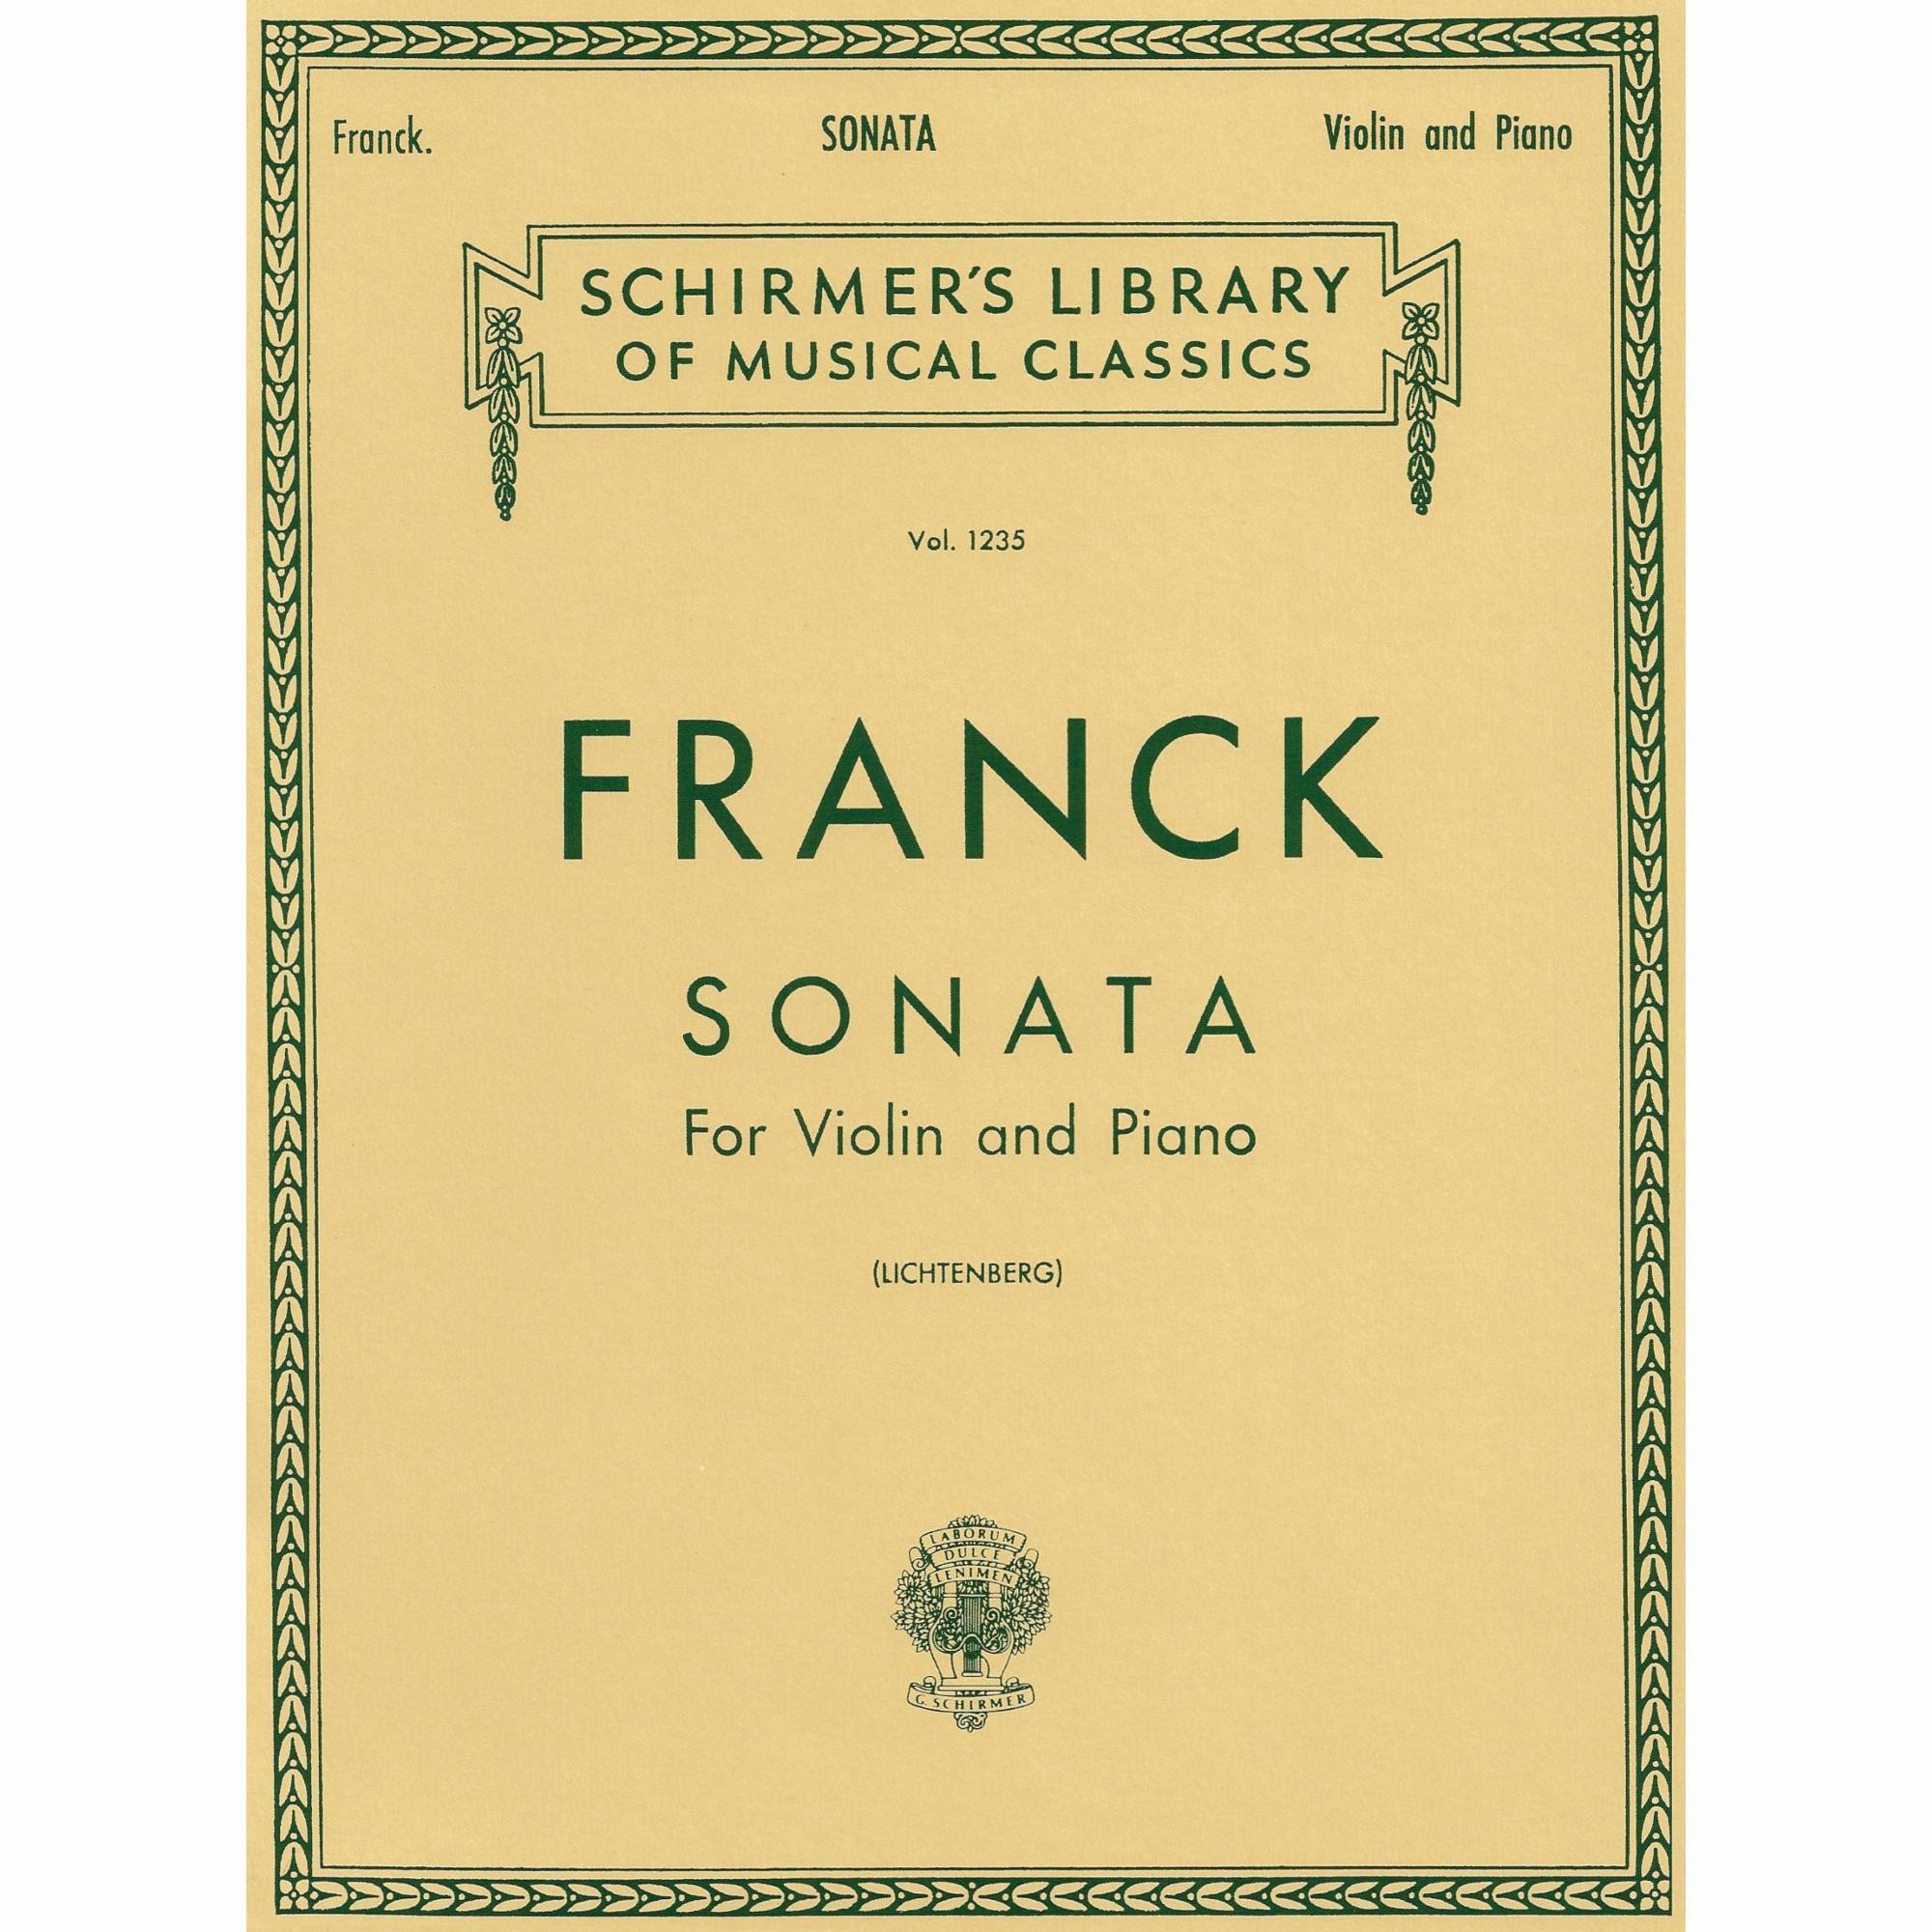 Franck -- Sonata for Violin and Piano